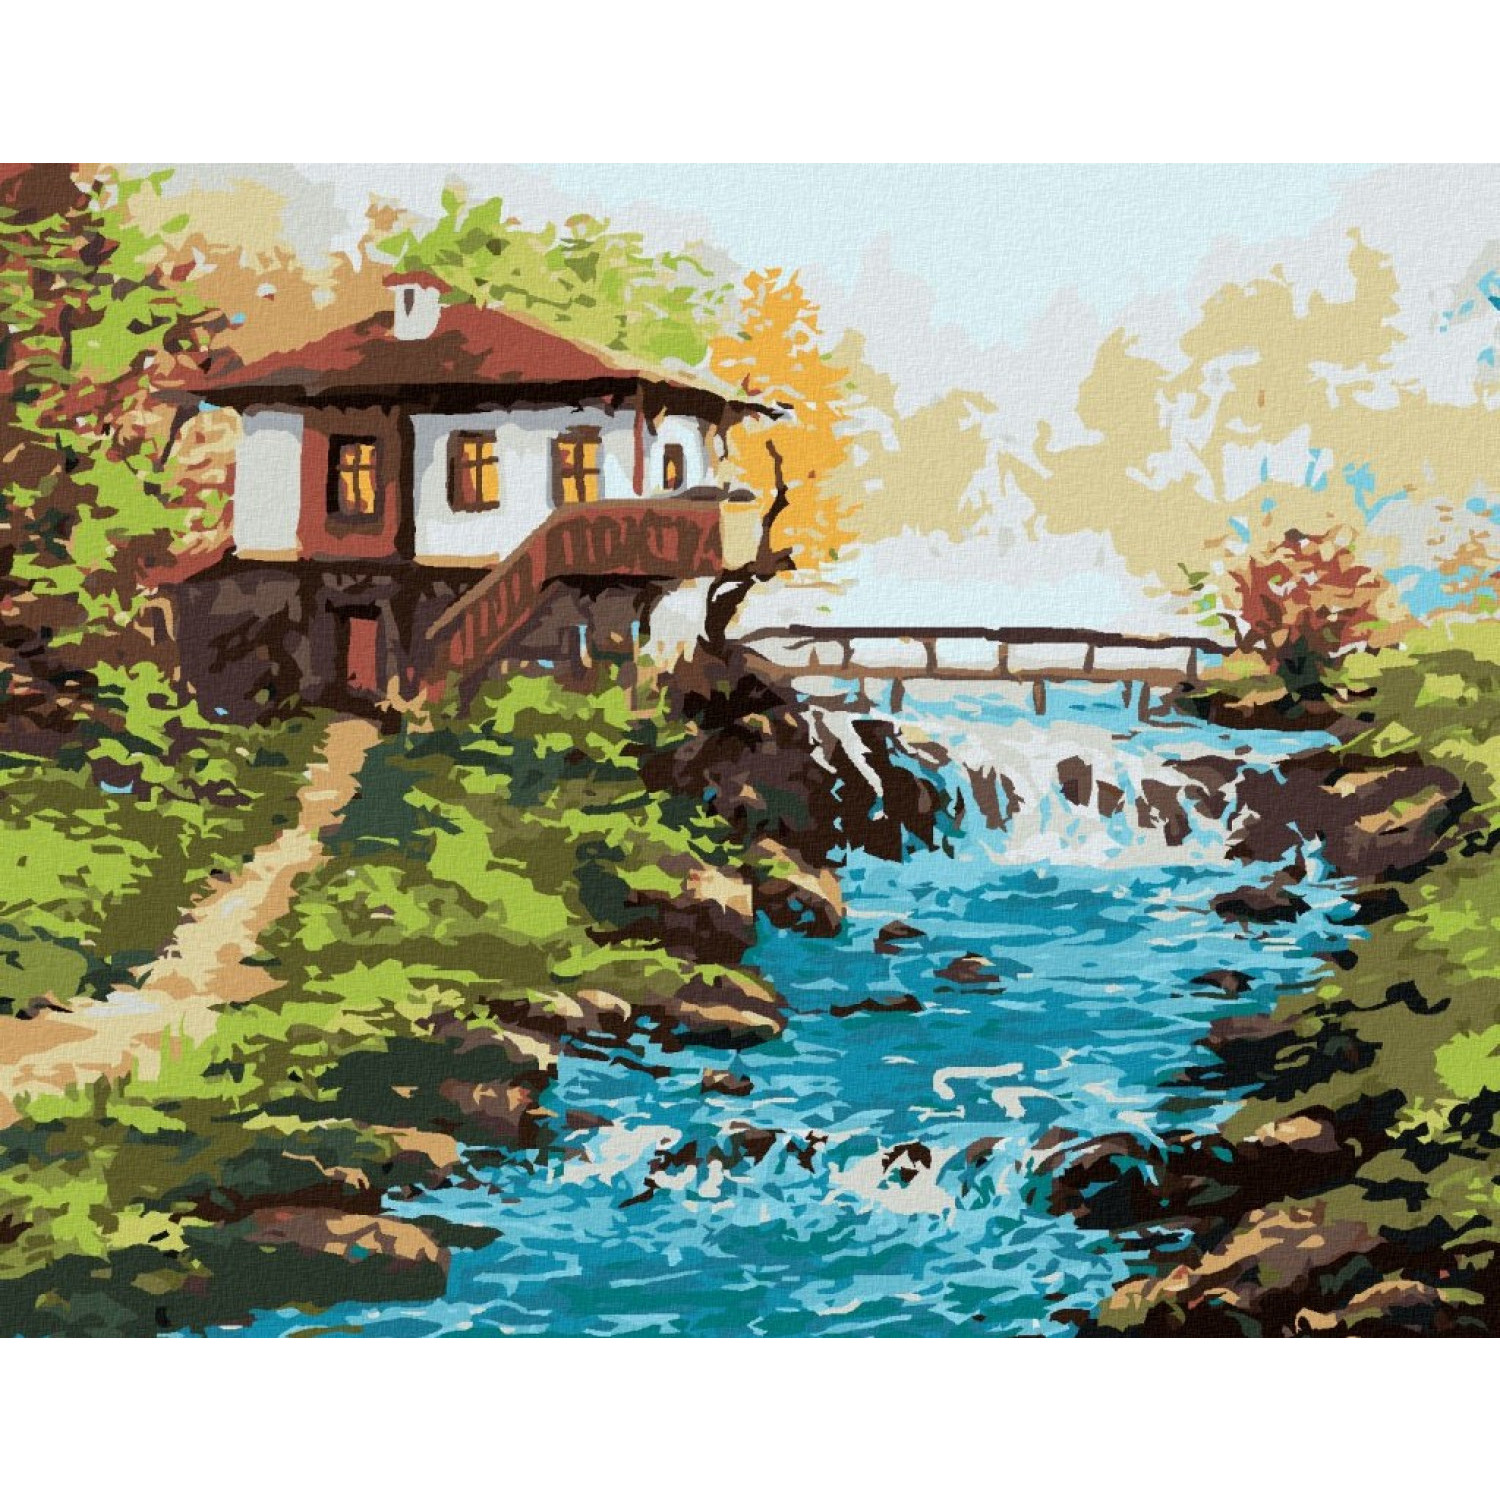 Рисуване по номера Българска къща край реката, с подрамка, 40х50 см.